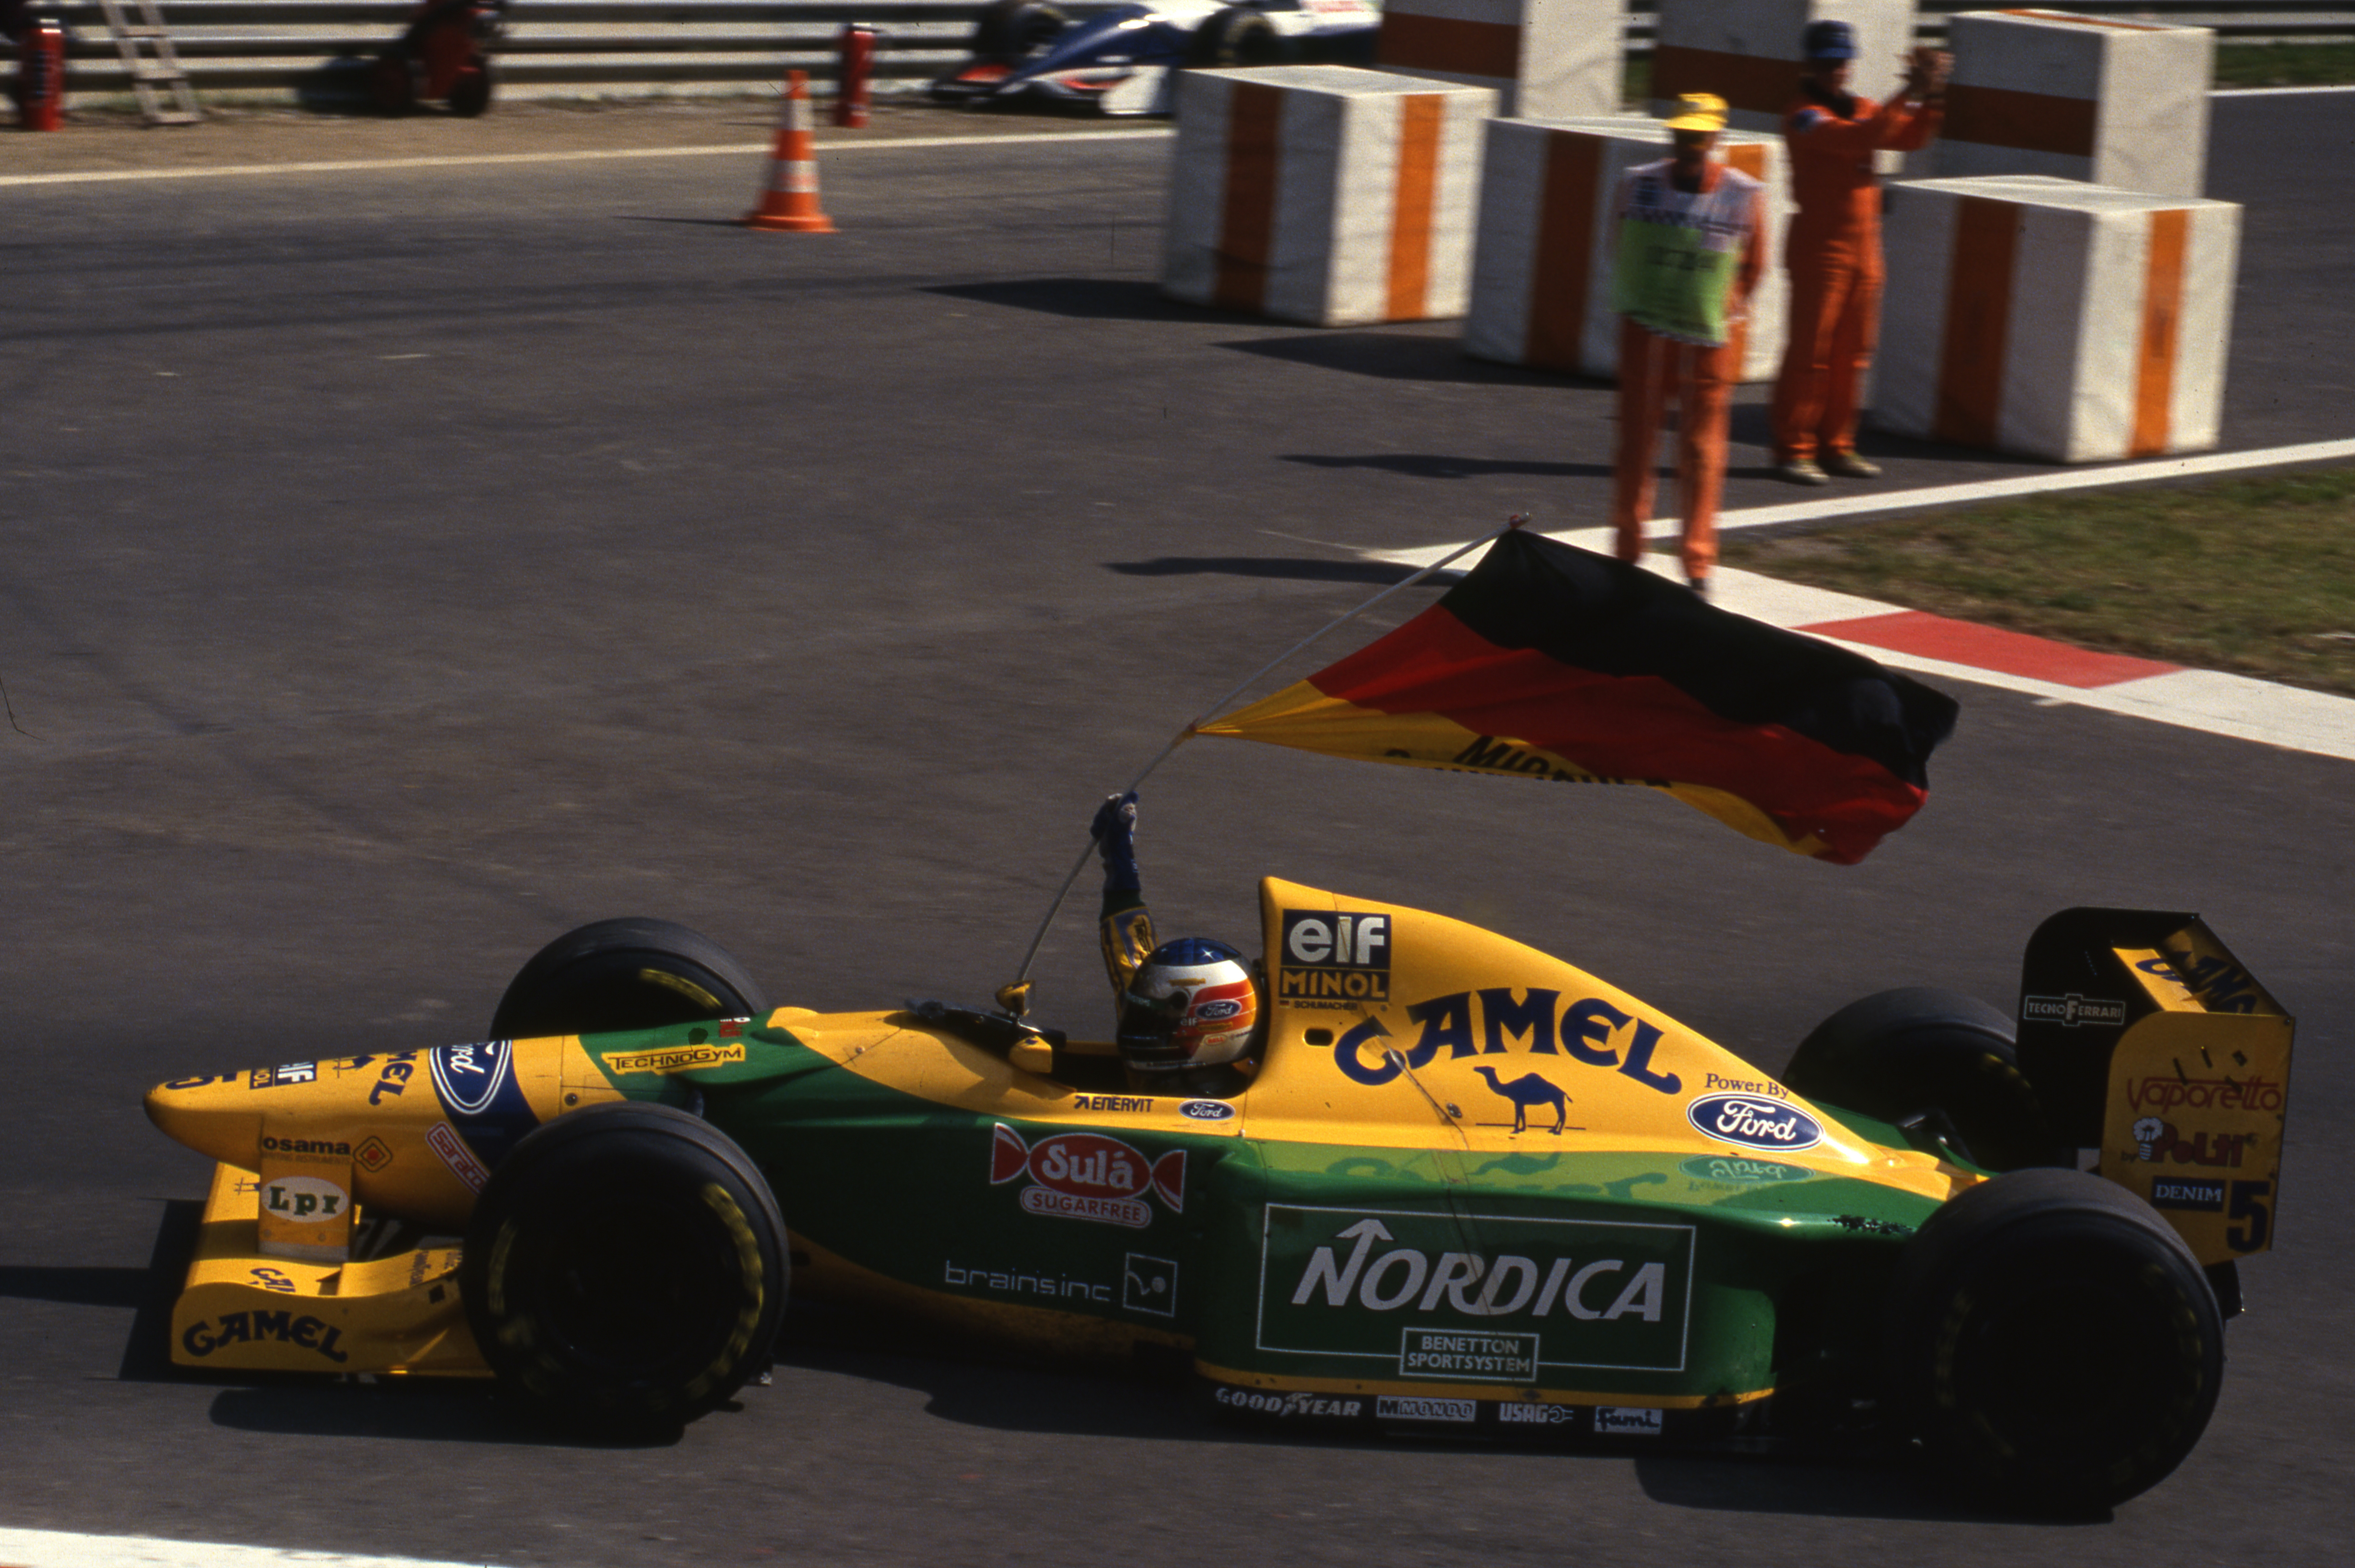 Michael Schumacher Benetton Portuguese Grand Prix 1993